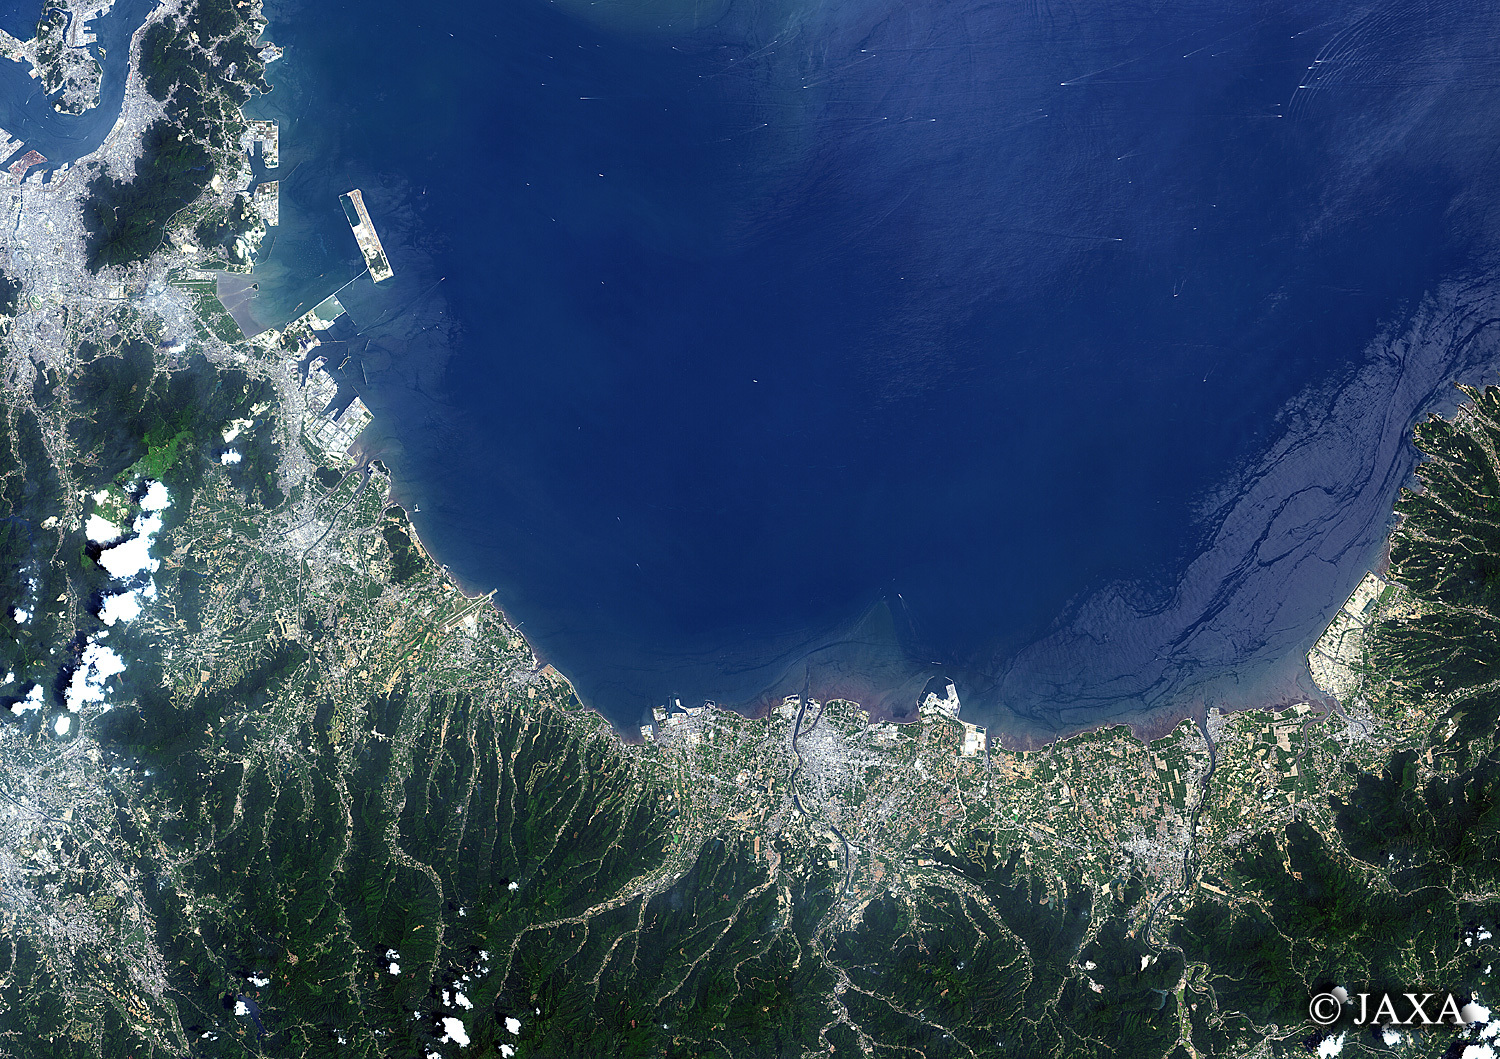 だいちから見た日本の都市 周防灘:衛星画像